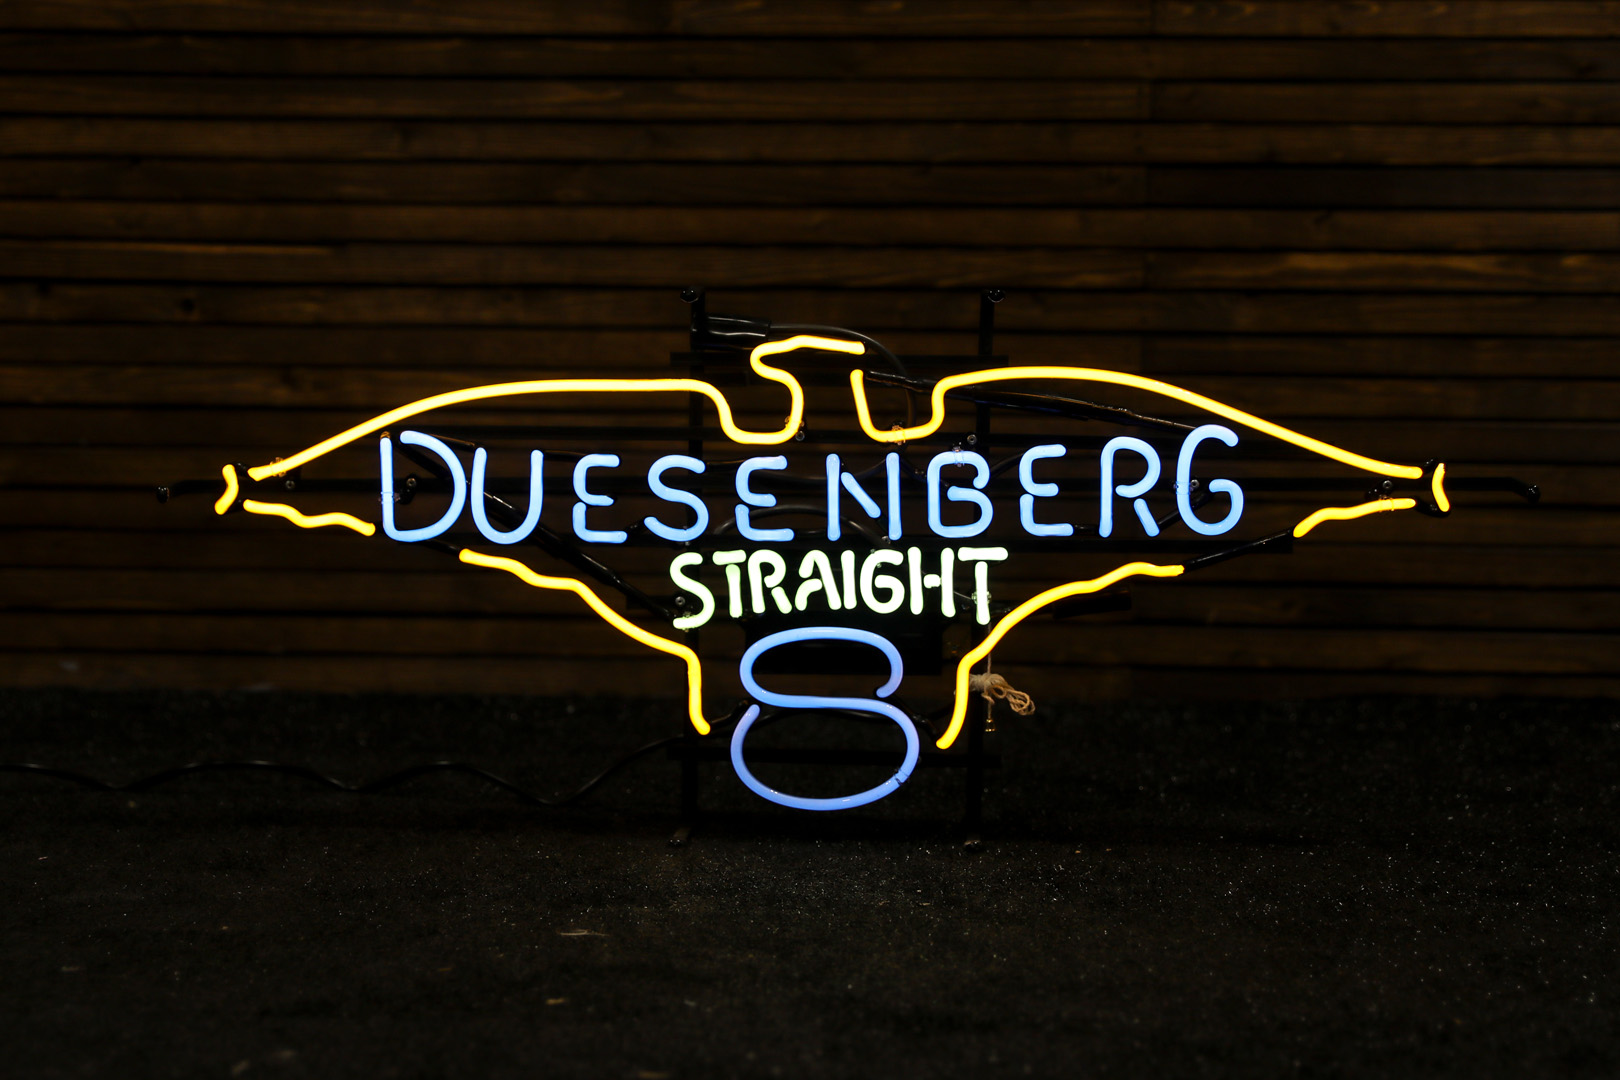 Custom Duesenberg Neon Sign